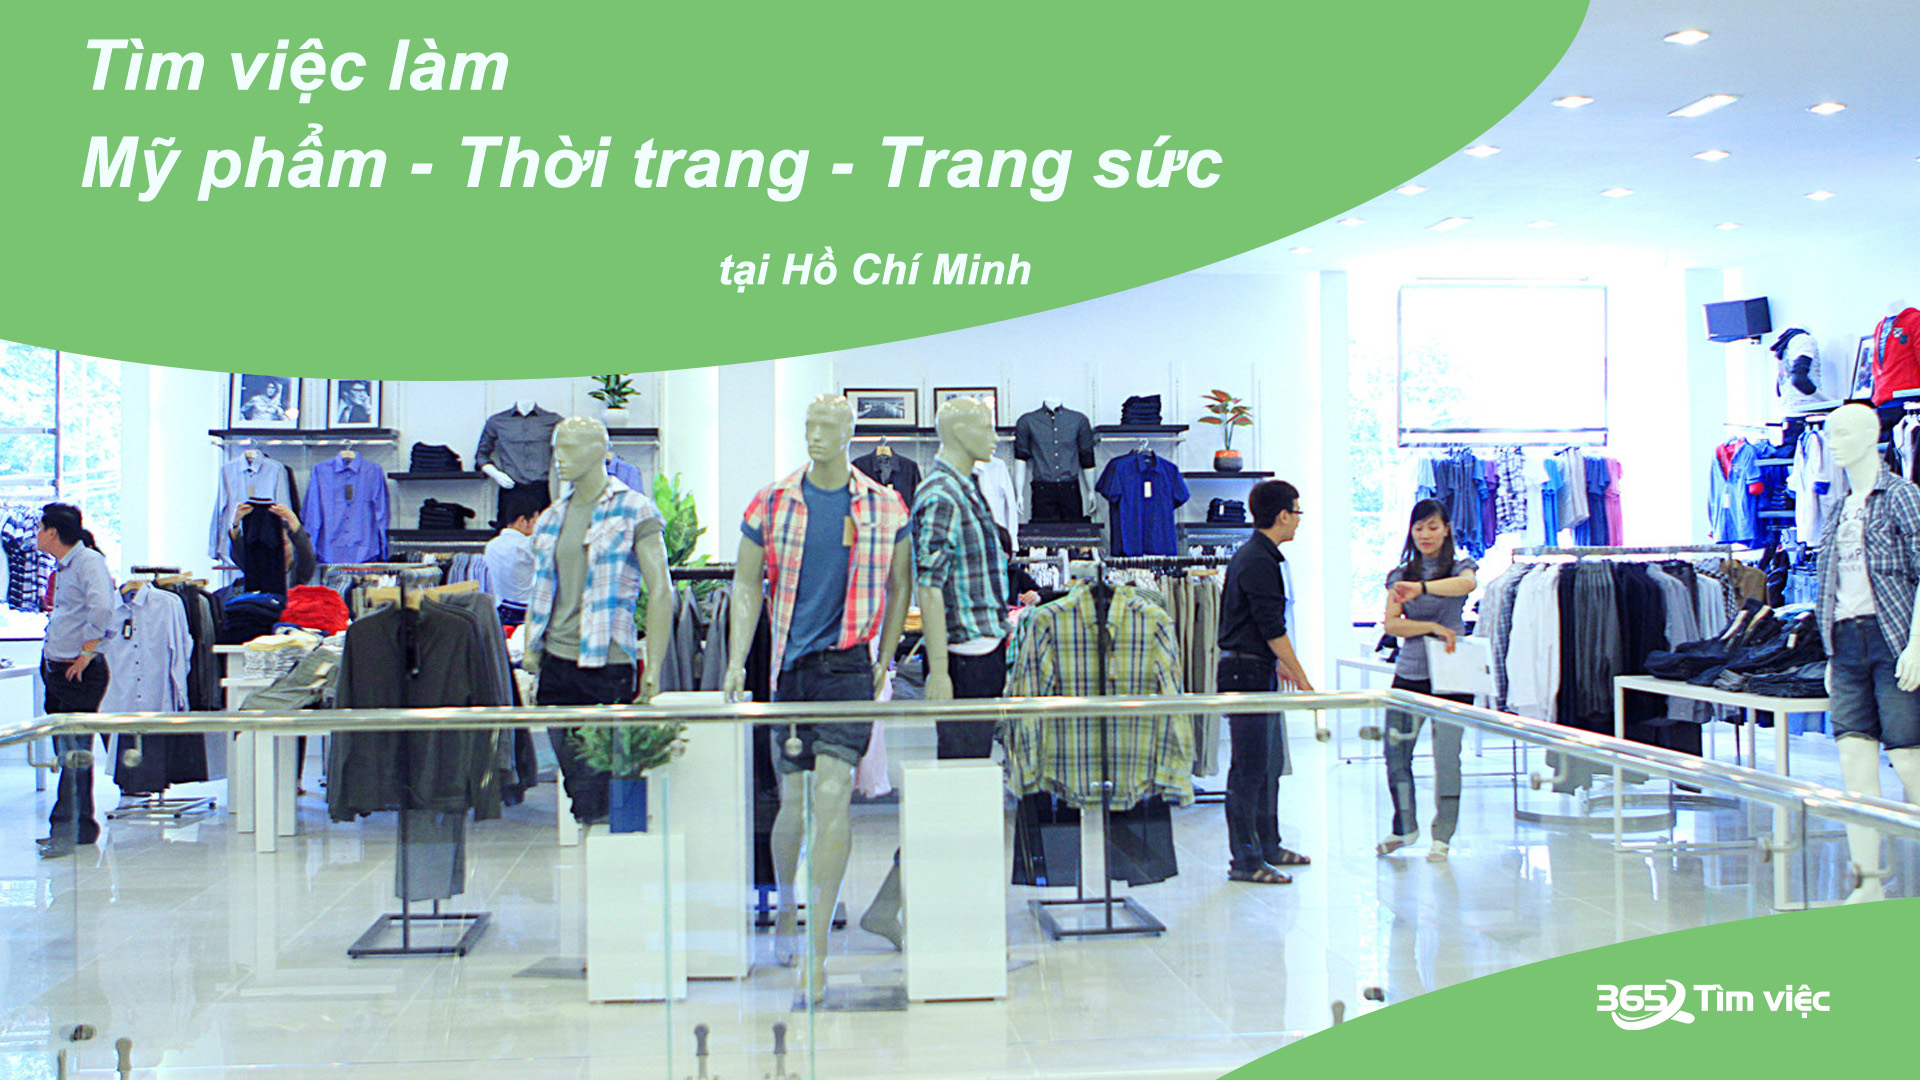 Các doanh nghiệp thương hiệu Mỹ phẩm - Thời trang - Trang sức đua nhau đầu tư vào Thành phố Hồ Chí Minh 